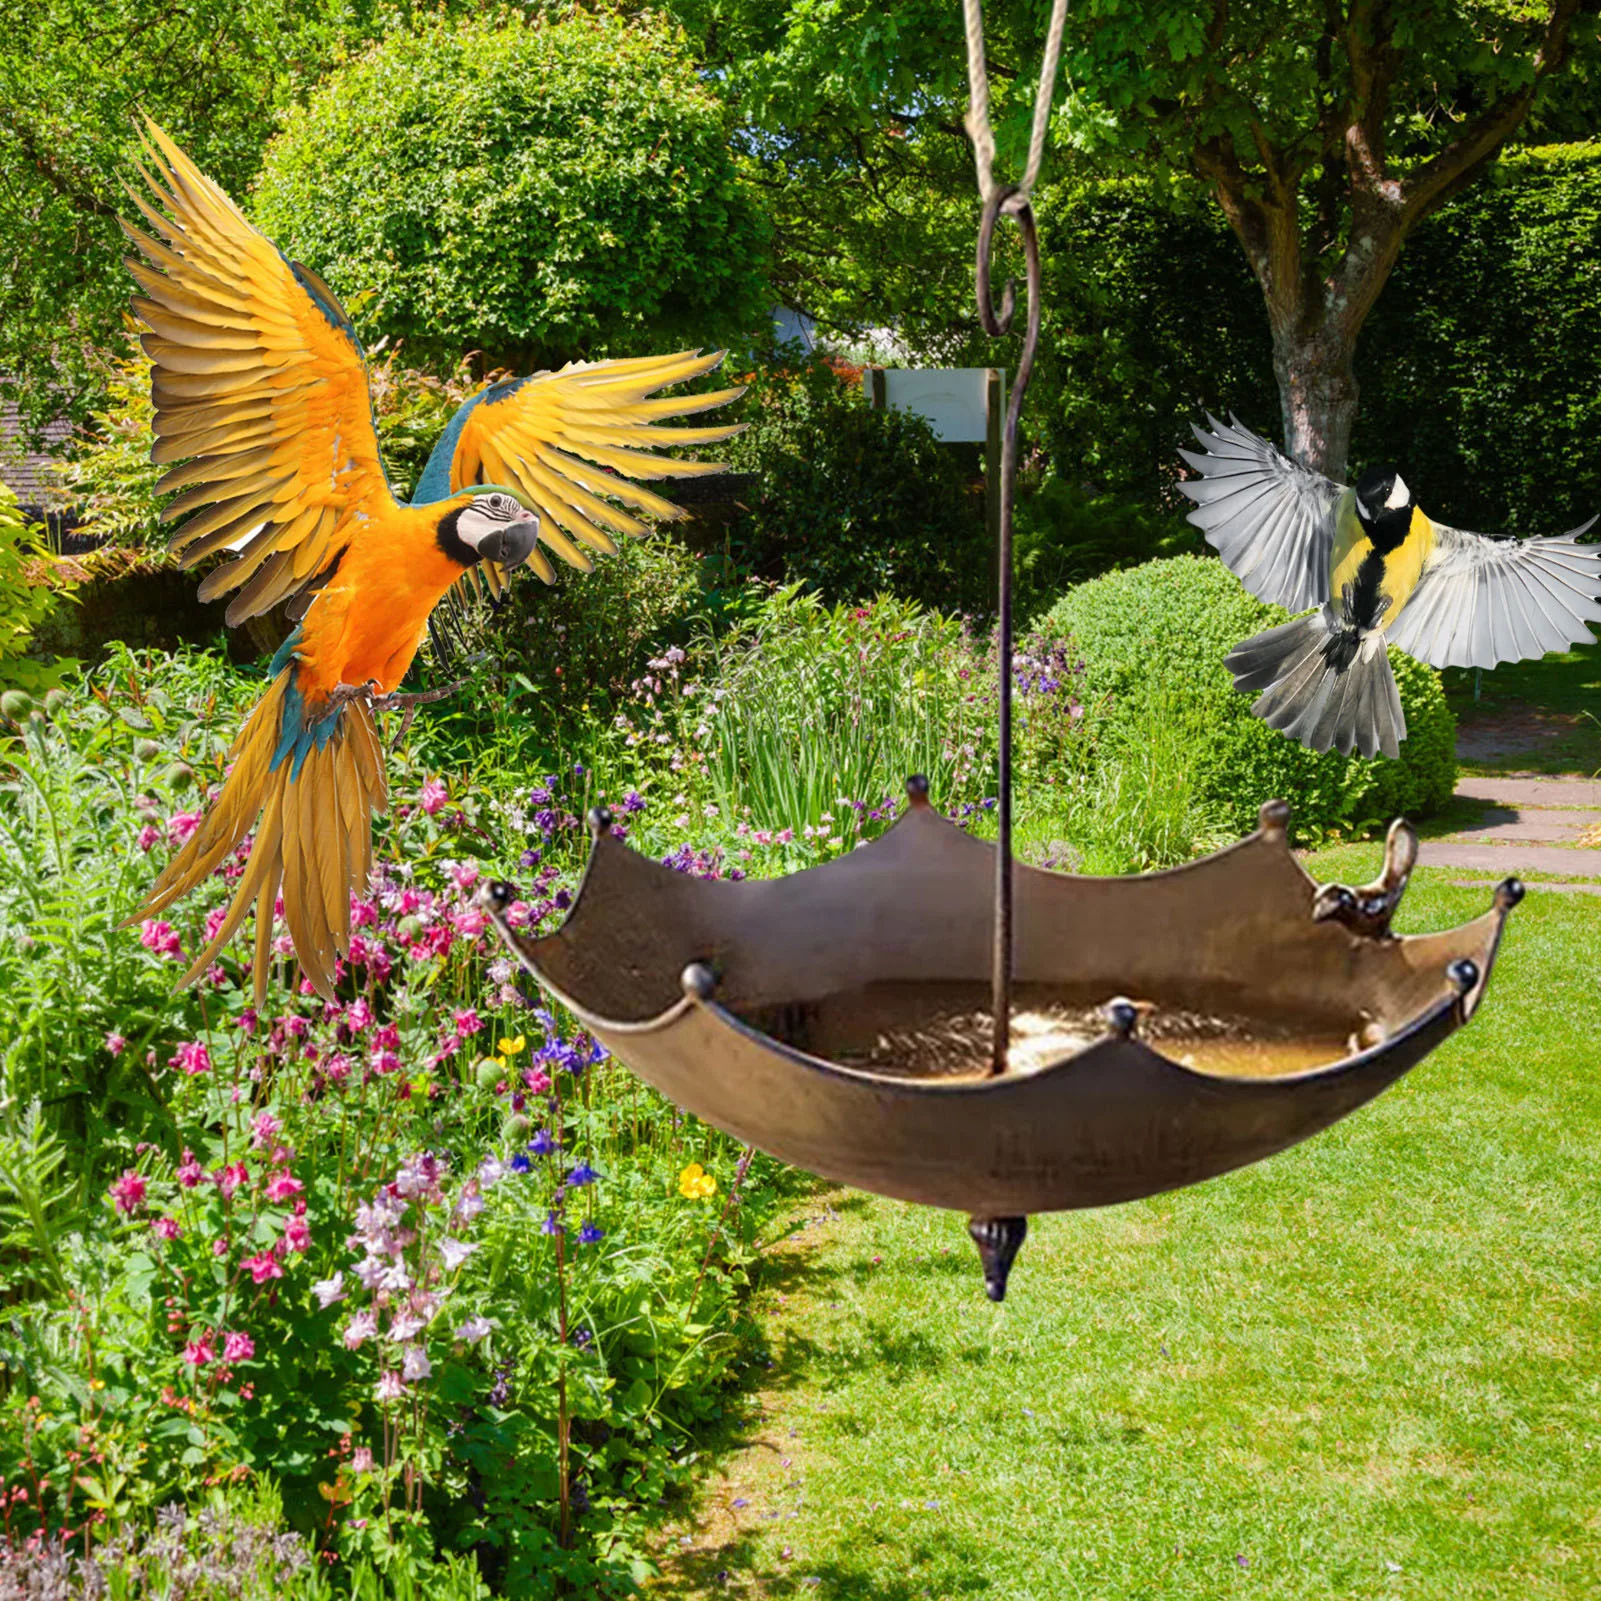 Umbrella-Shaped Bird Trough Outdoor Bird Feeder Tray Metal Umbrella-Shaped Bird Bath Feeder To In The Garden Outside Decoration